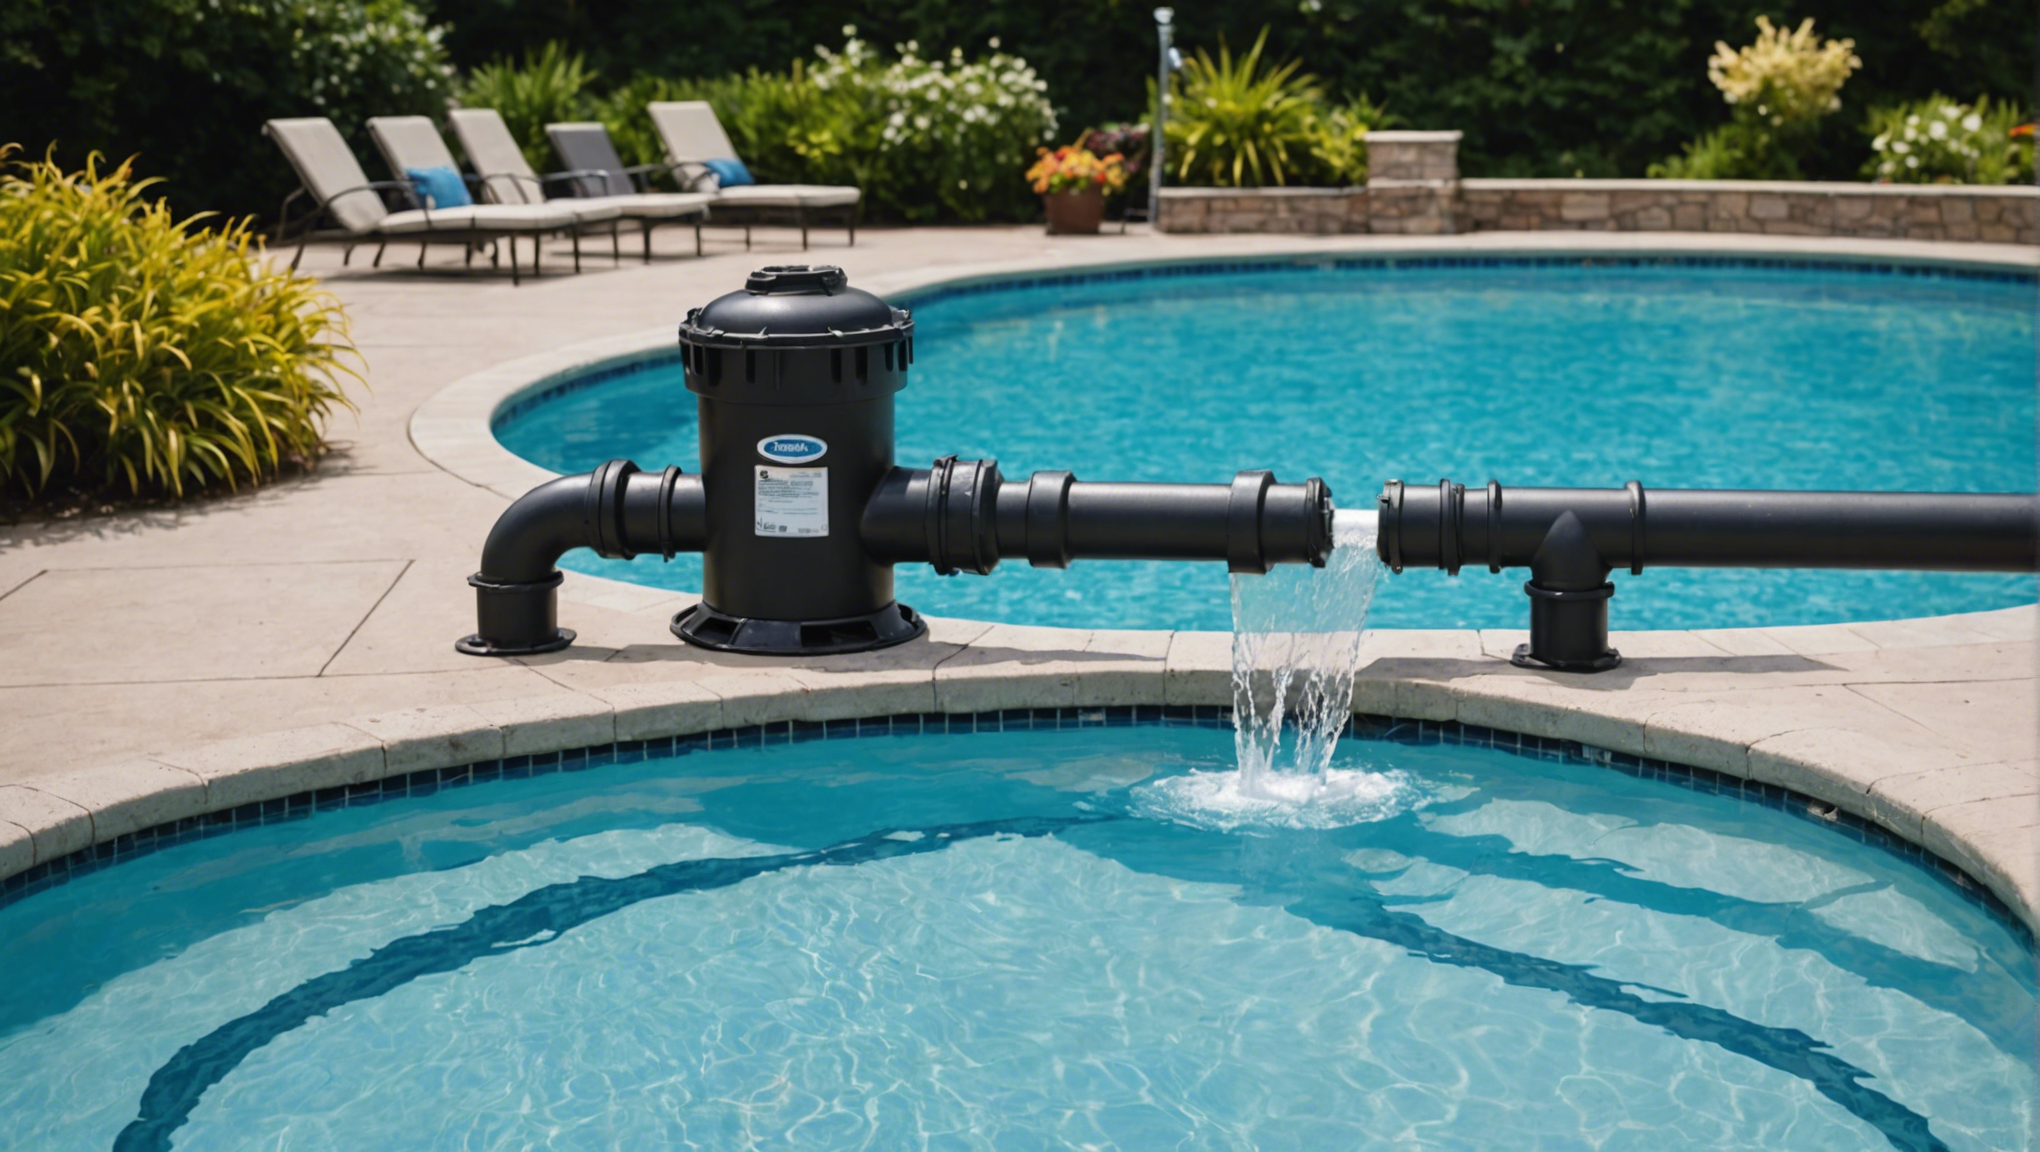 découvrez les avantages de laisser sa pompe de piscine fonctionner en continu et les bonnes pratiques pour assurer le bon entretien de votre piscine.